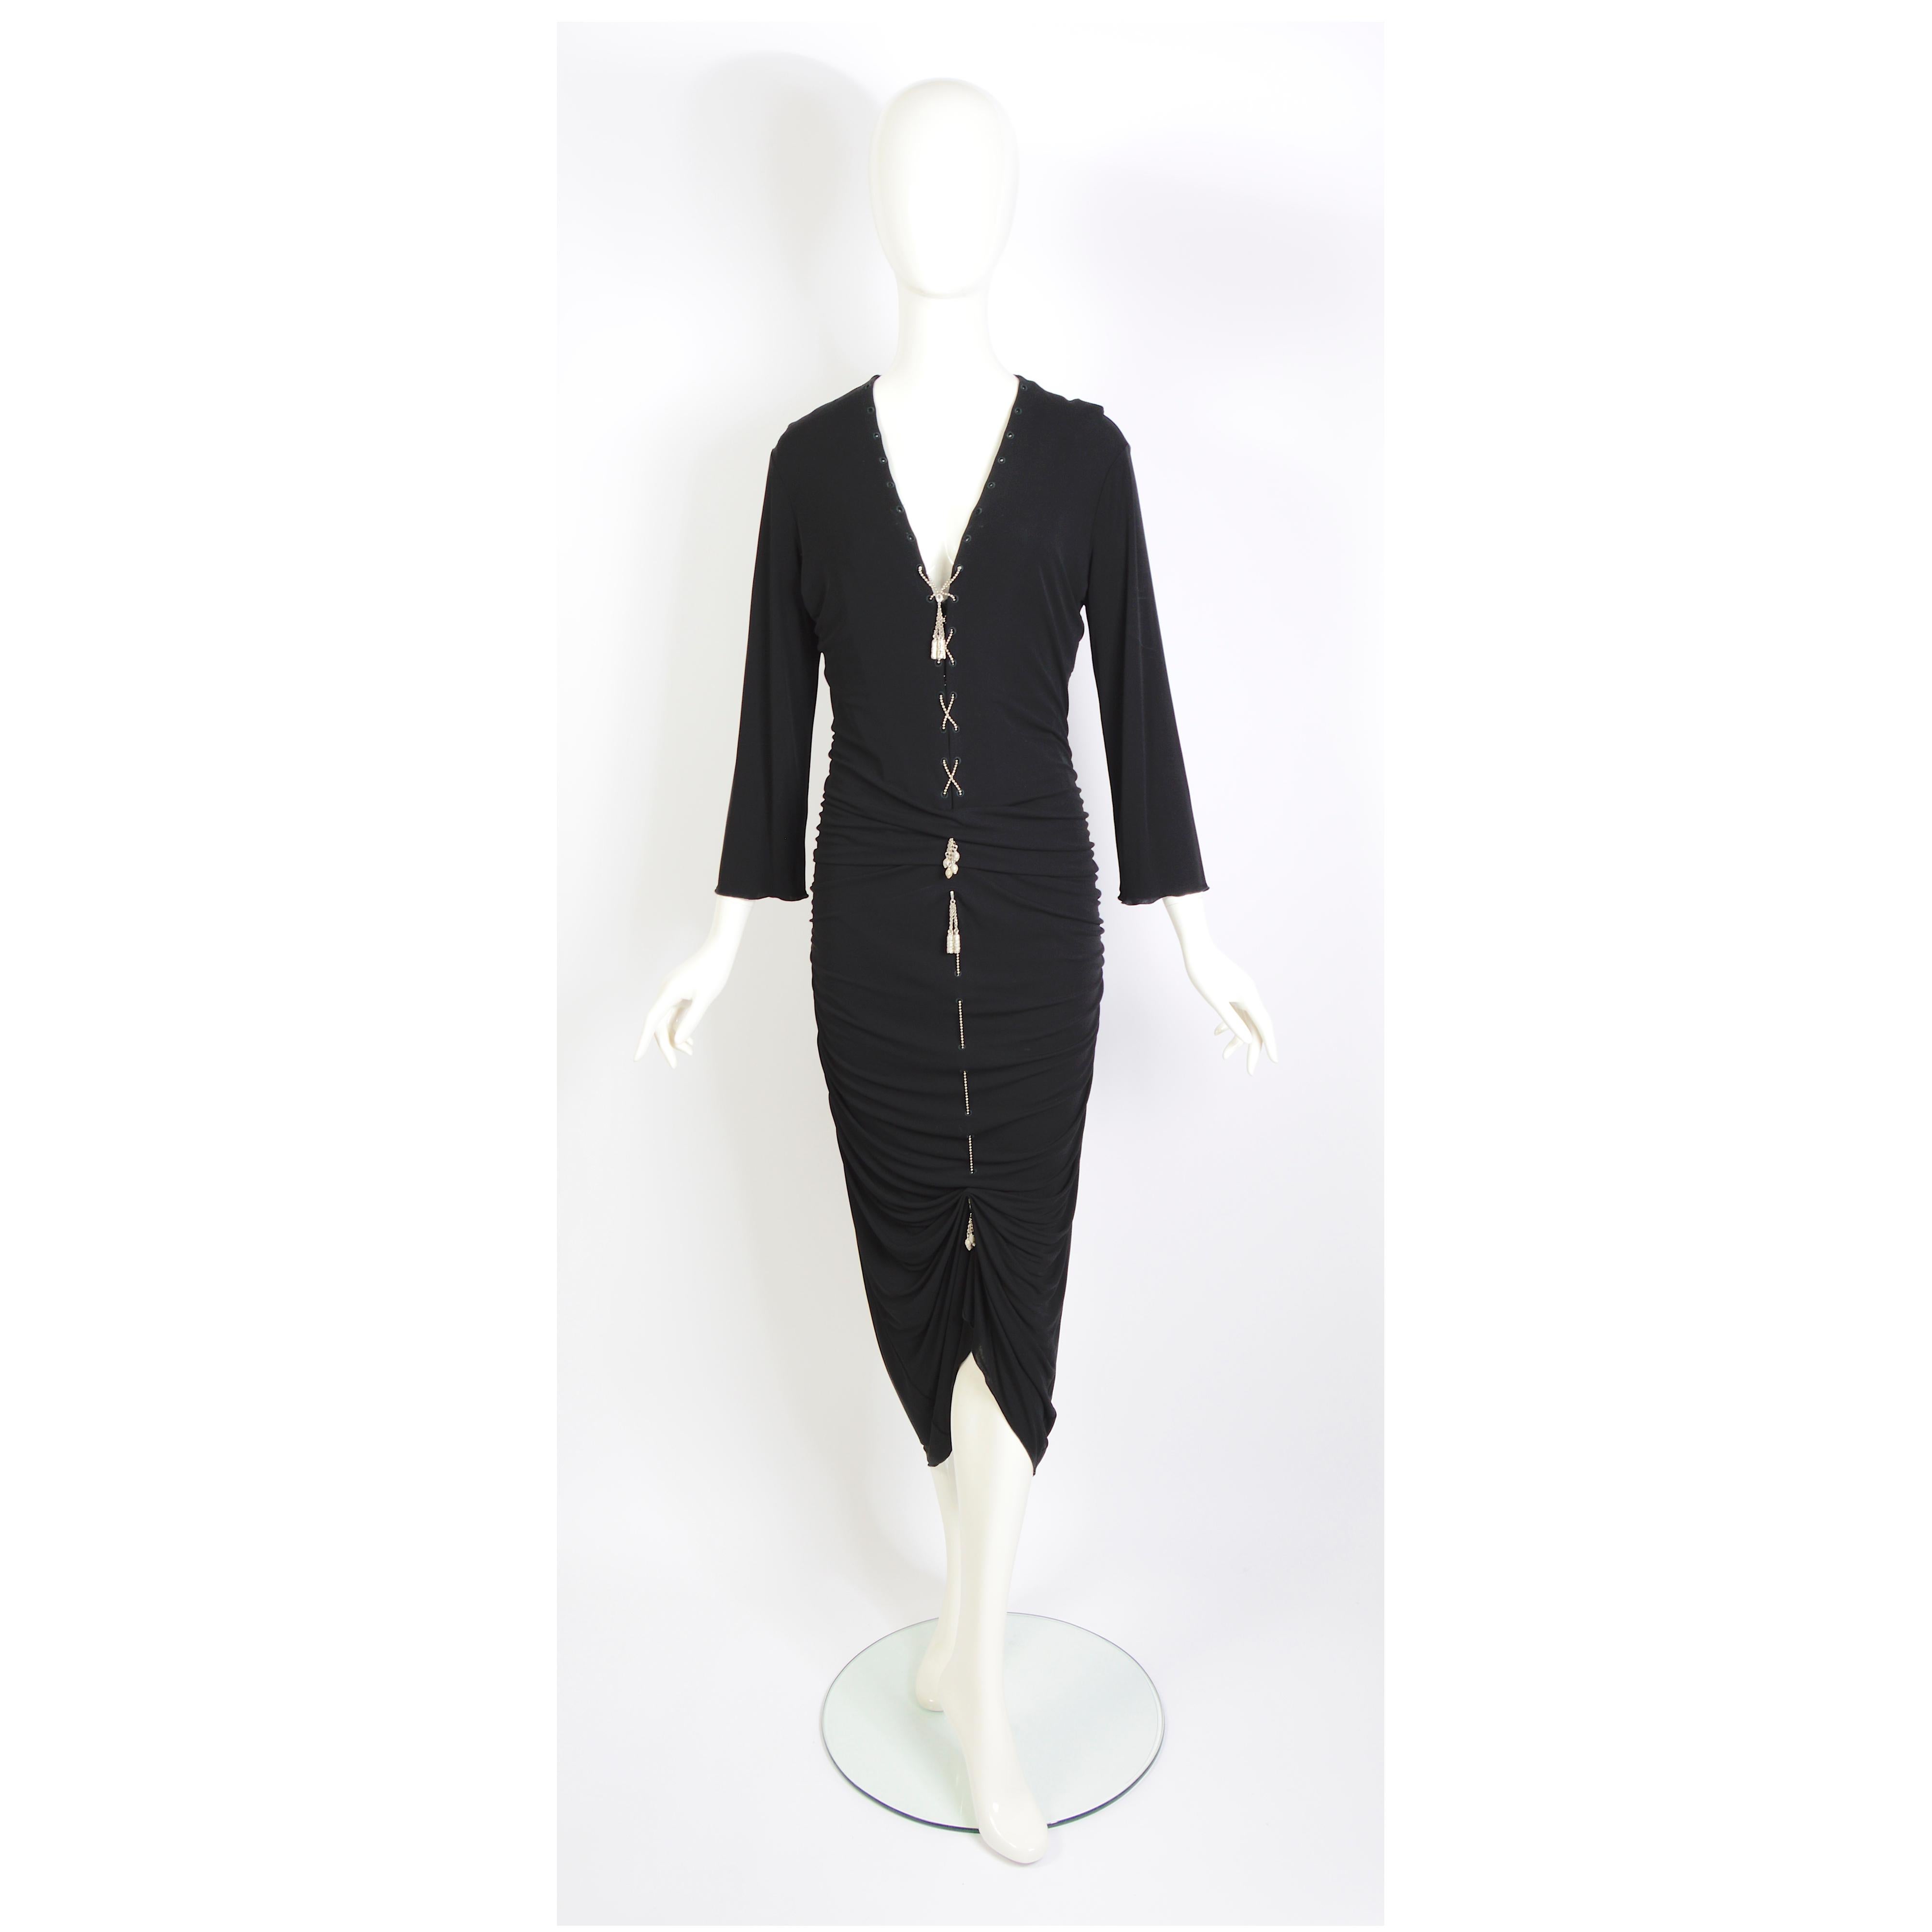 Jean Paul Gaultier 1990er Jahre Vintage halbdurchsichtiges Kleid aus schwarzem, drapiertem Jersey mit Schnürung und Metallkette mit Pompoms verziert. 
Ein schwarzes Seidenfutter wurde hinzugefügt, kann aber leicht entfernt werden.
Label für die